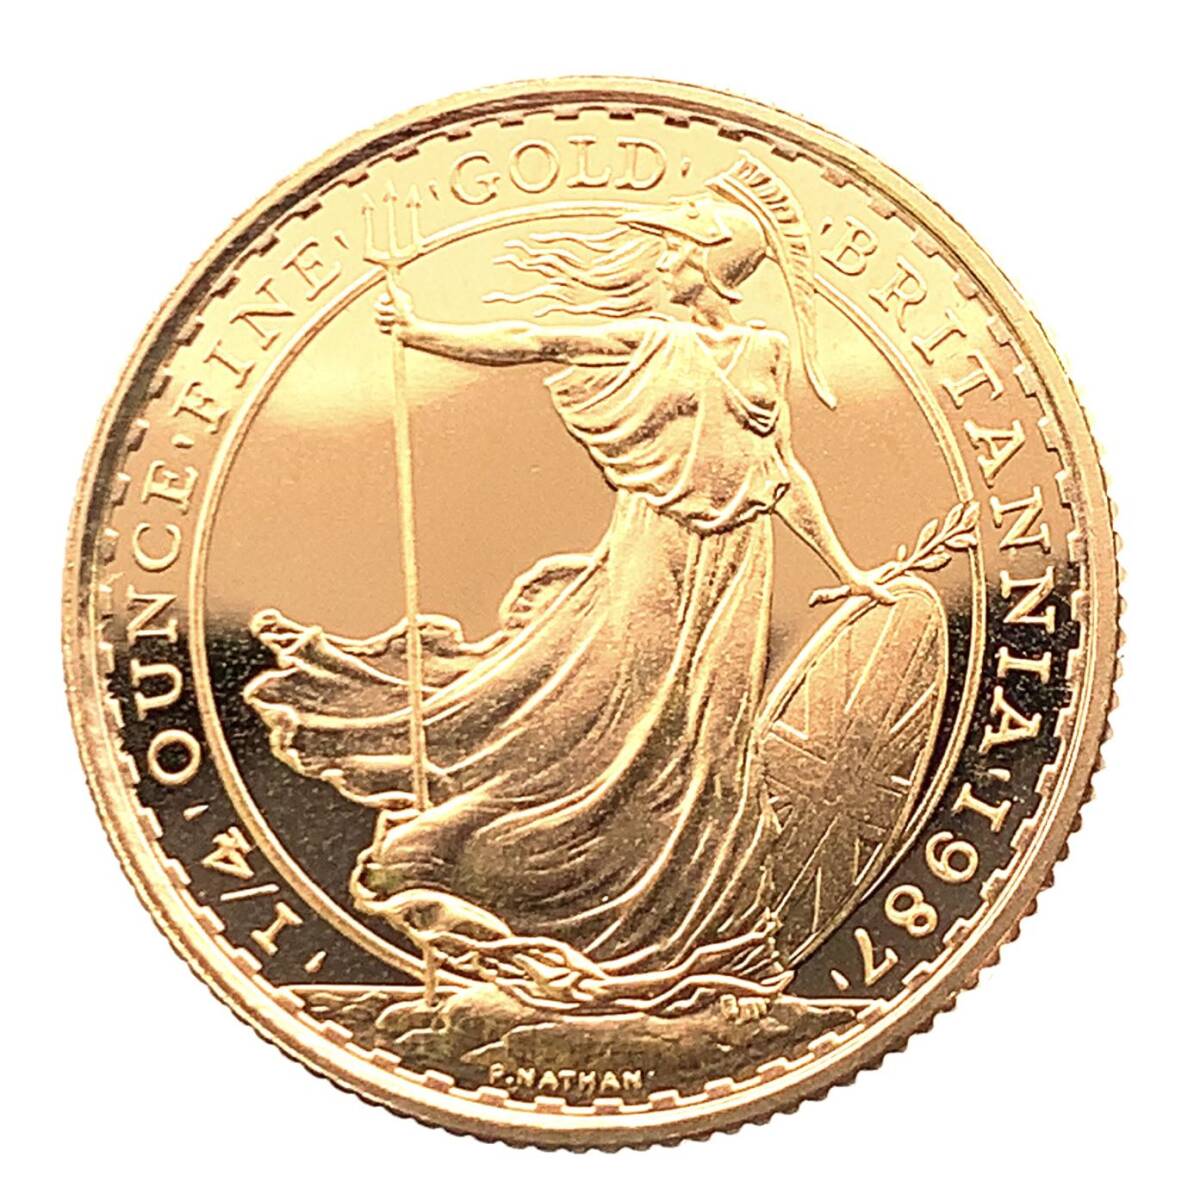 ブリタニア 女神 金貨 BRITANNIA 1987年 8.5g ゴールド 22金 エリザベス2世 イギリス コレクション